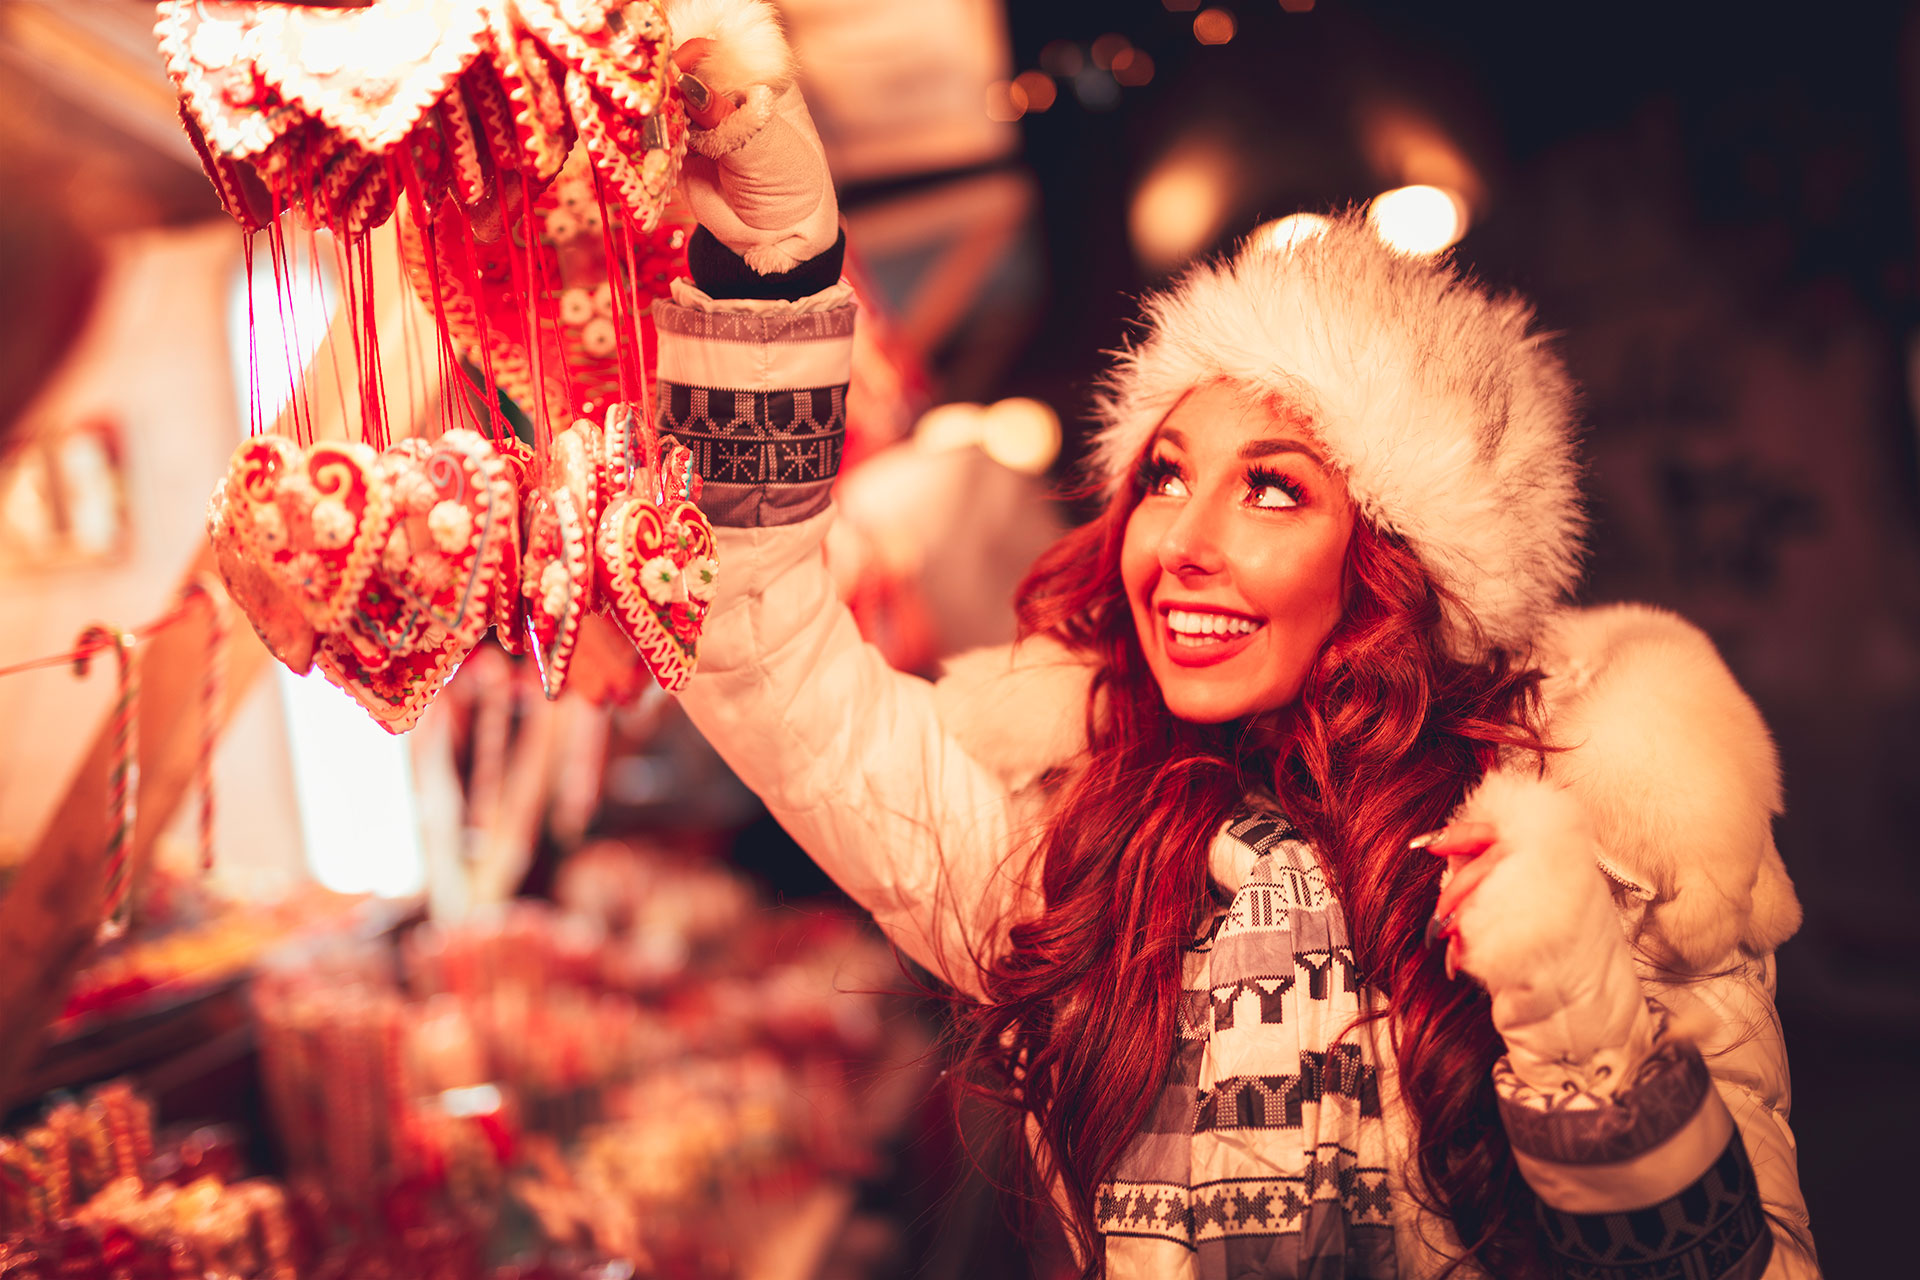 Marché de Noël - Noël - achat - amis - amour - bonheur - fête - cadeau - crèche - hivers - sapins